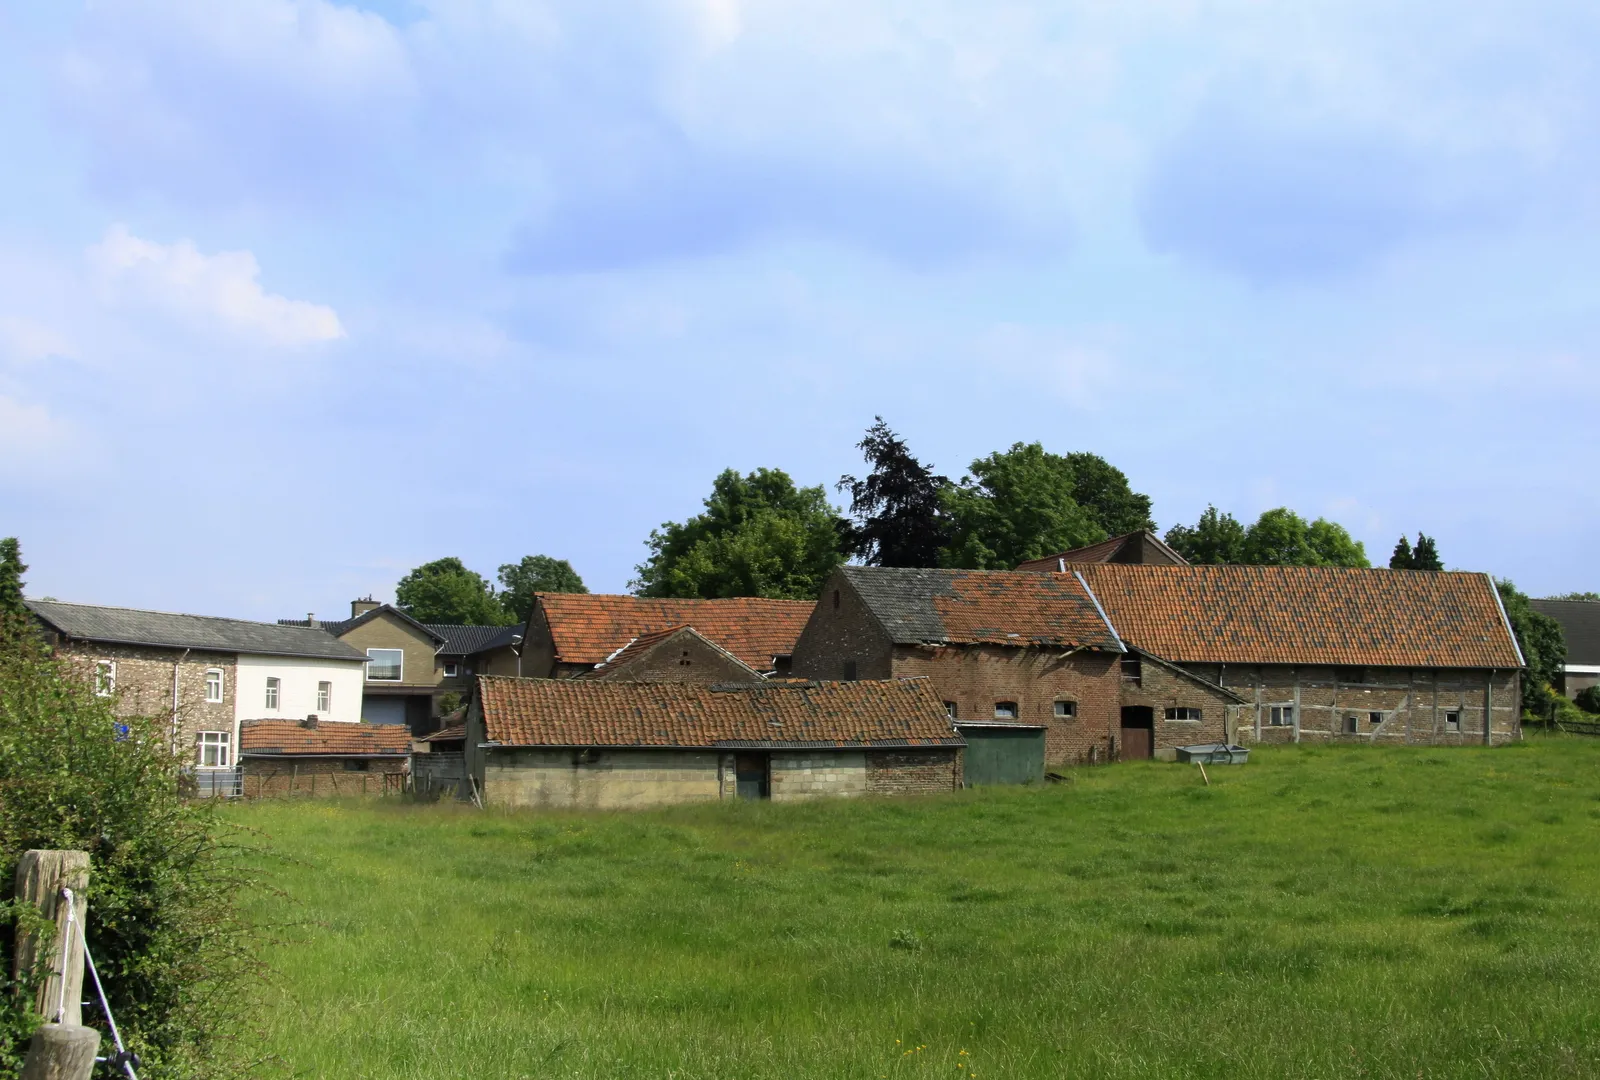 Photo showing: Een boerderij complex in Terhorst ten zuiden van Banholt in de gemeente Eijsden-Margraten, Het complex is beeldbepalend voor het buurtschap. Wat zou het mooi zijn dat alles daar een grondige restauratie kreeg.